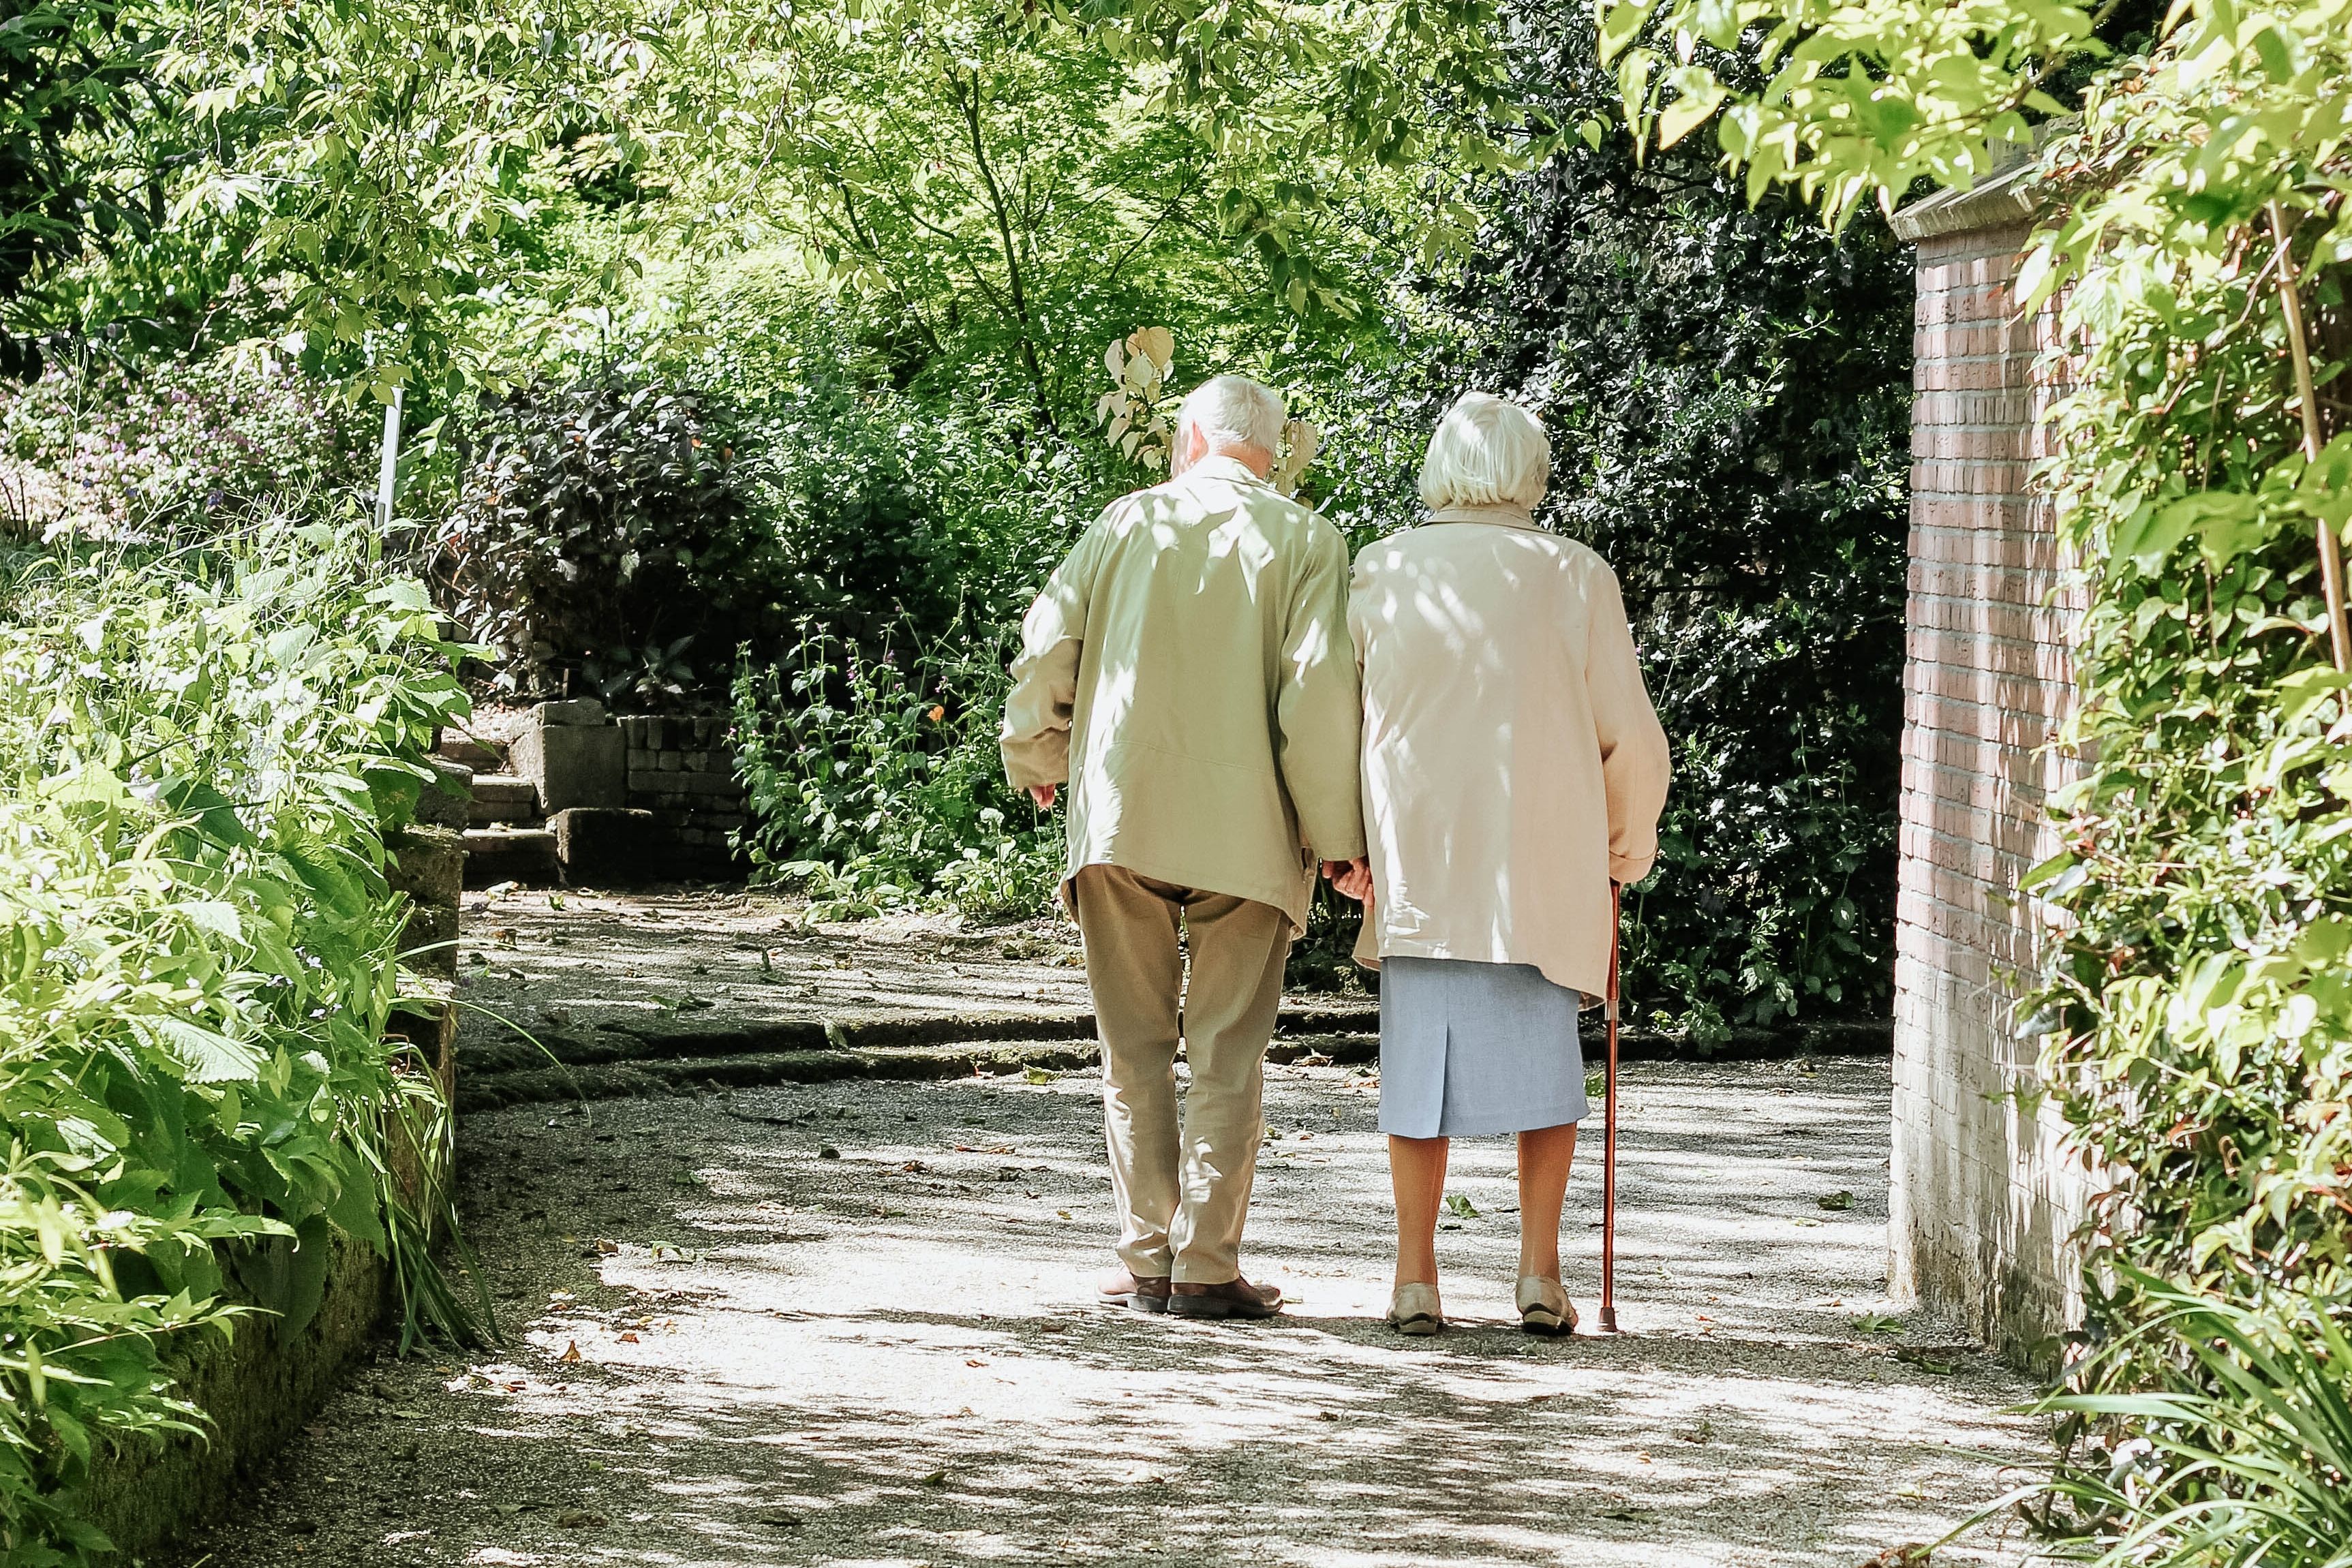 Ist Alzheimer eine normale Alterserscheinung? / Foto © visual stories micheile, unsplash